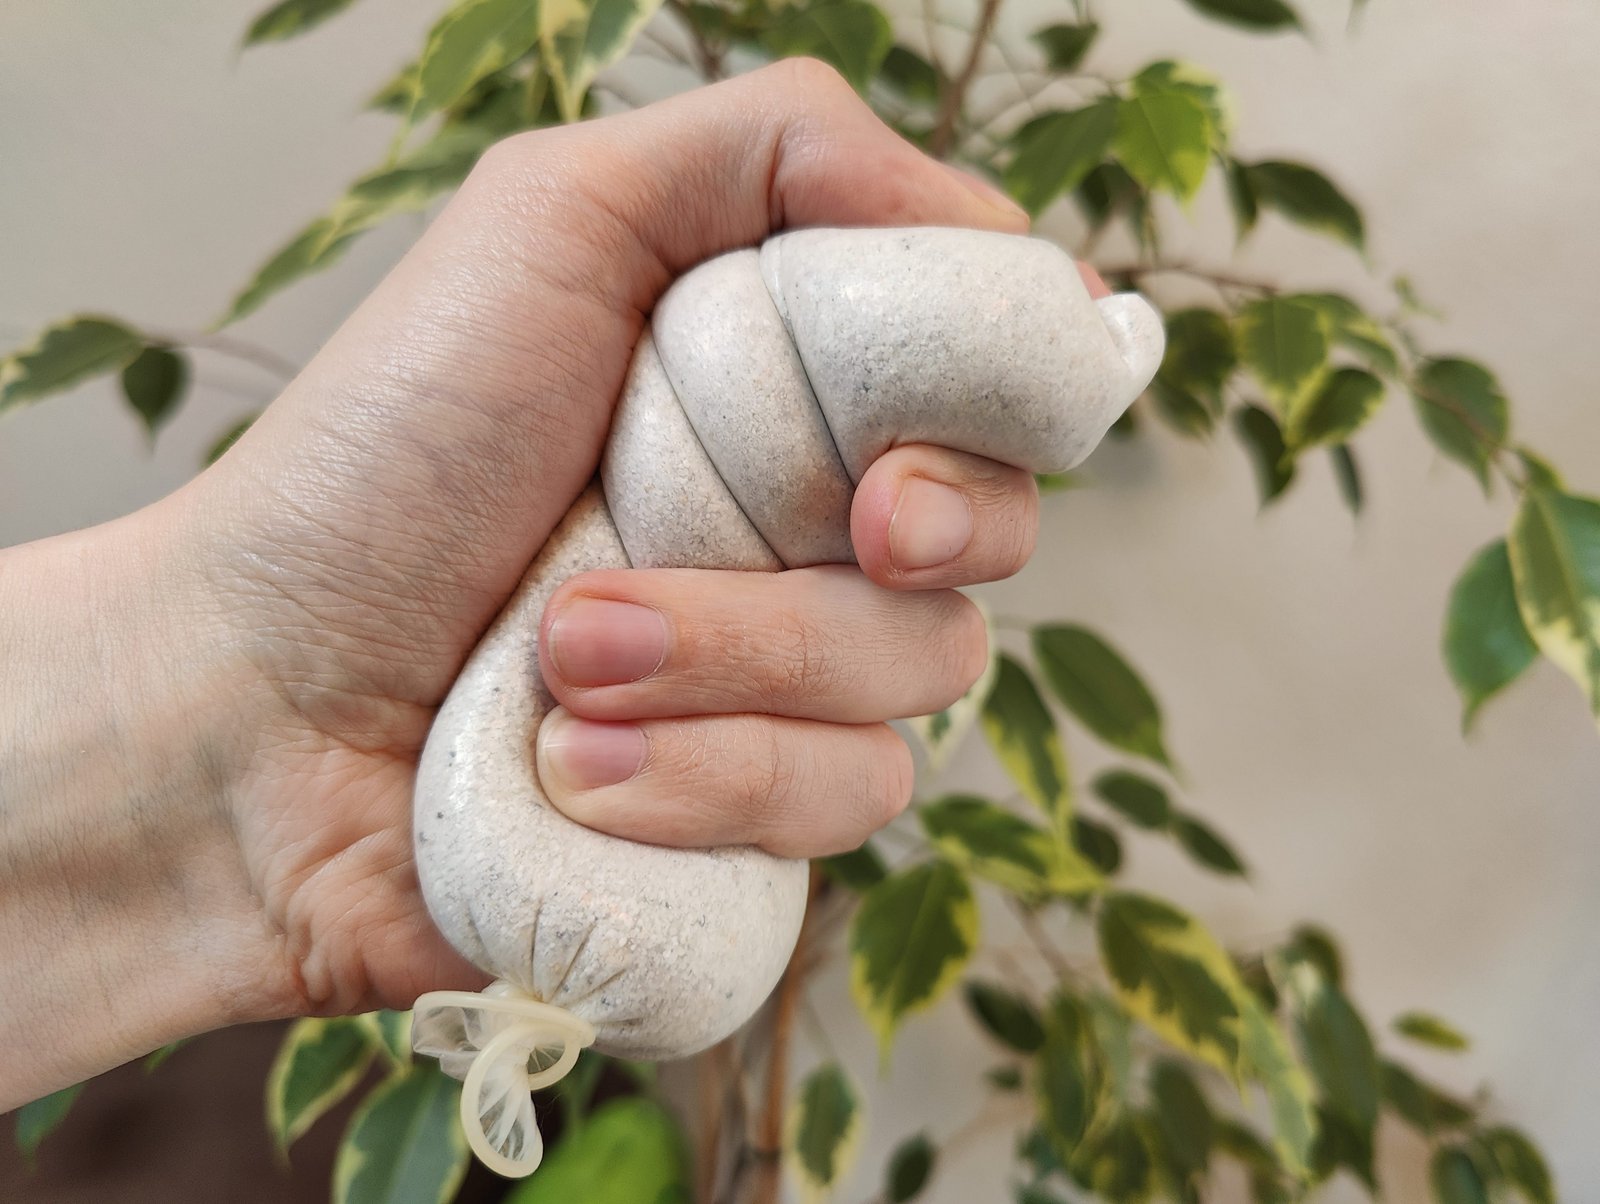 Просроченный презерватив, наполненный песком, в руке человека, использующего его в качестве мяча для снятия напряжения